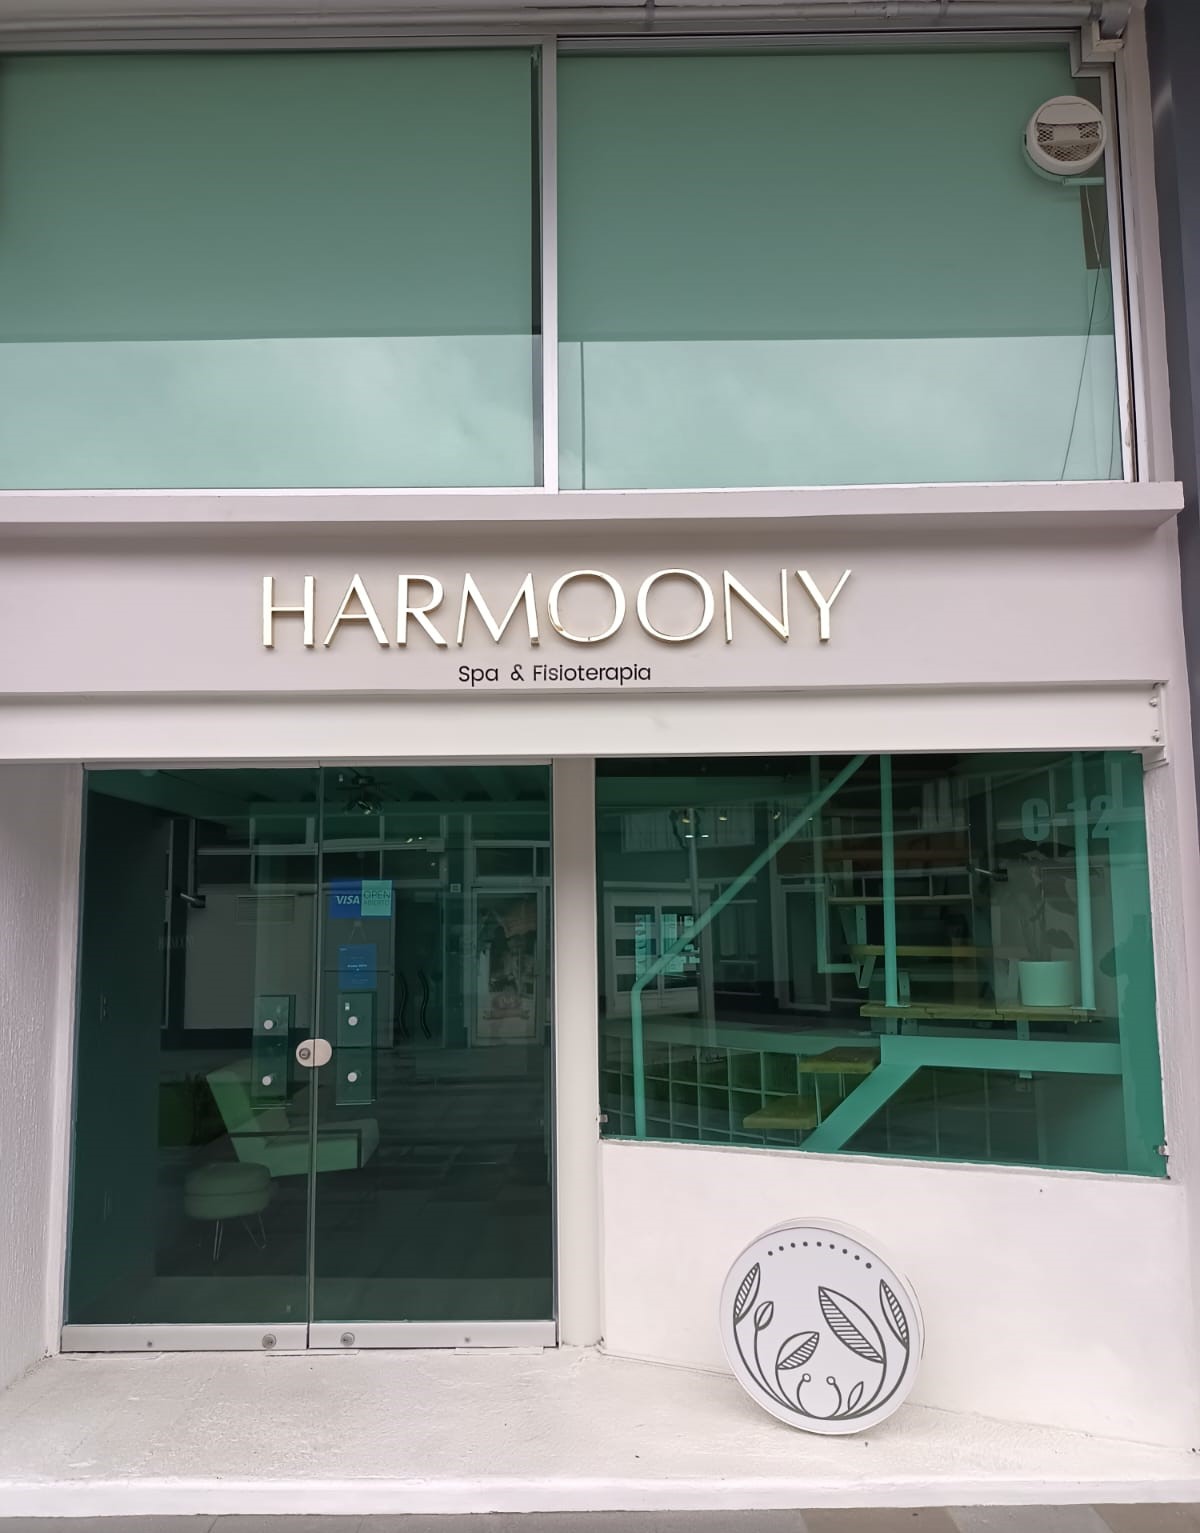 entrada de local comercial con nombre harmoony